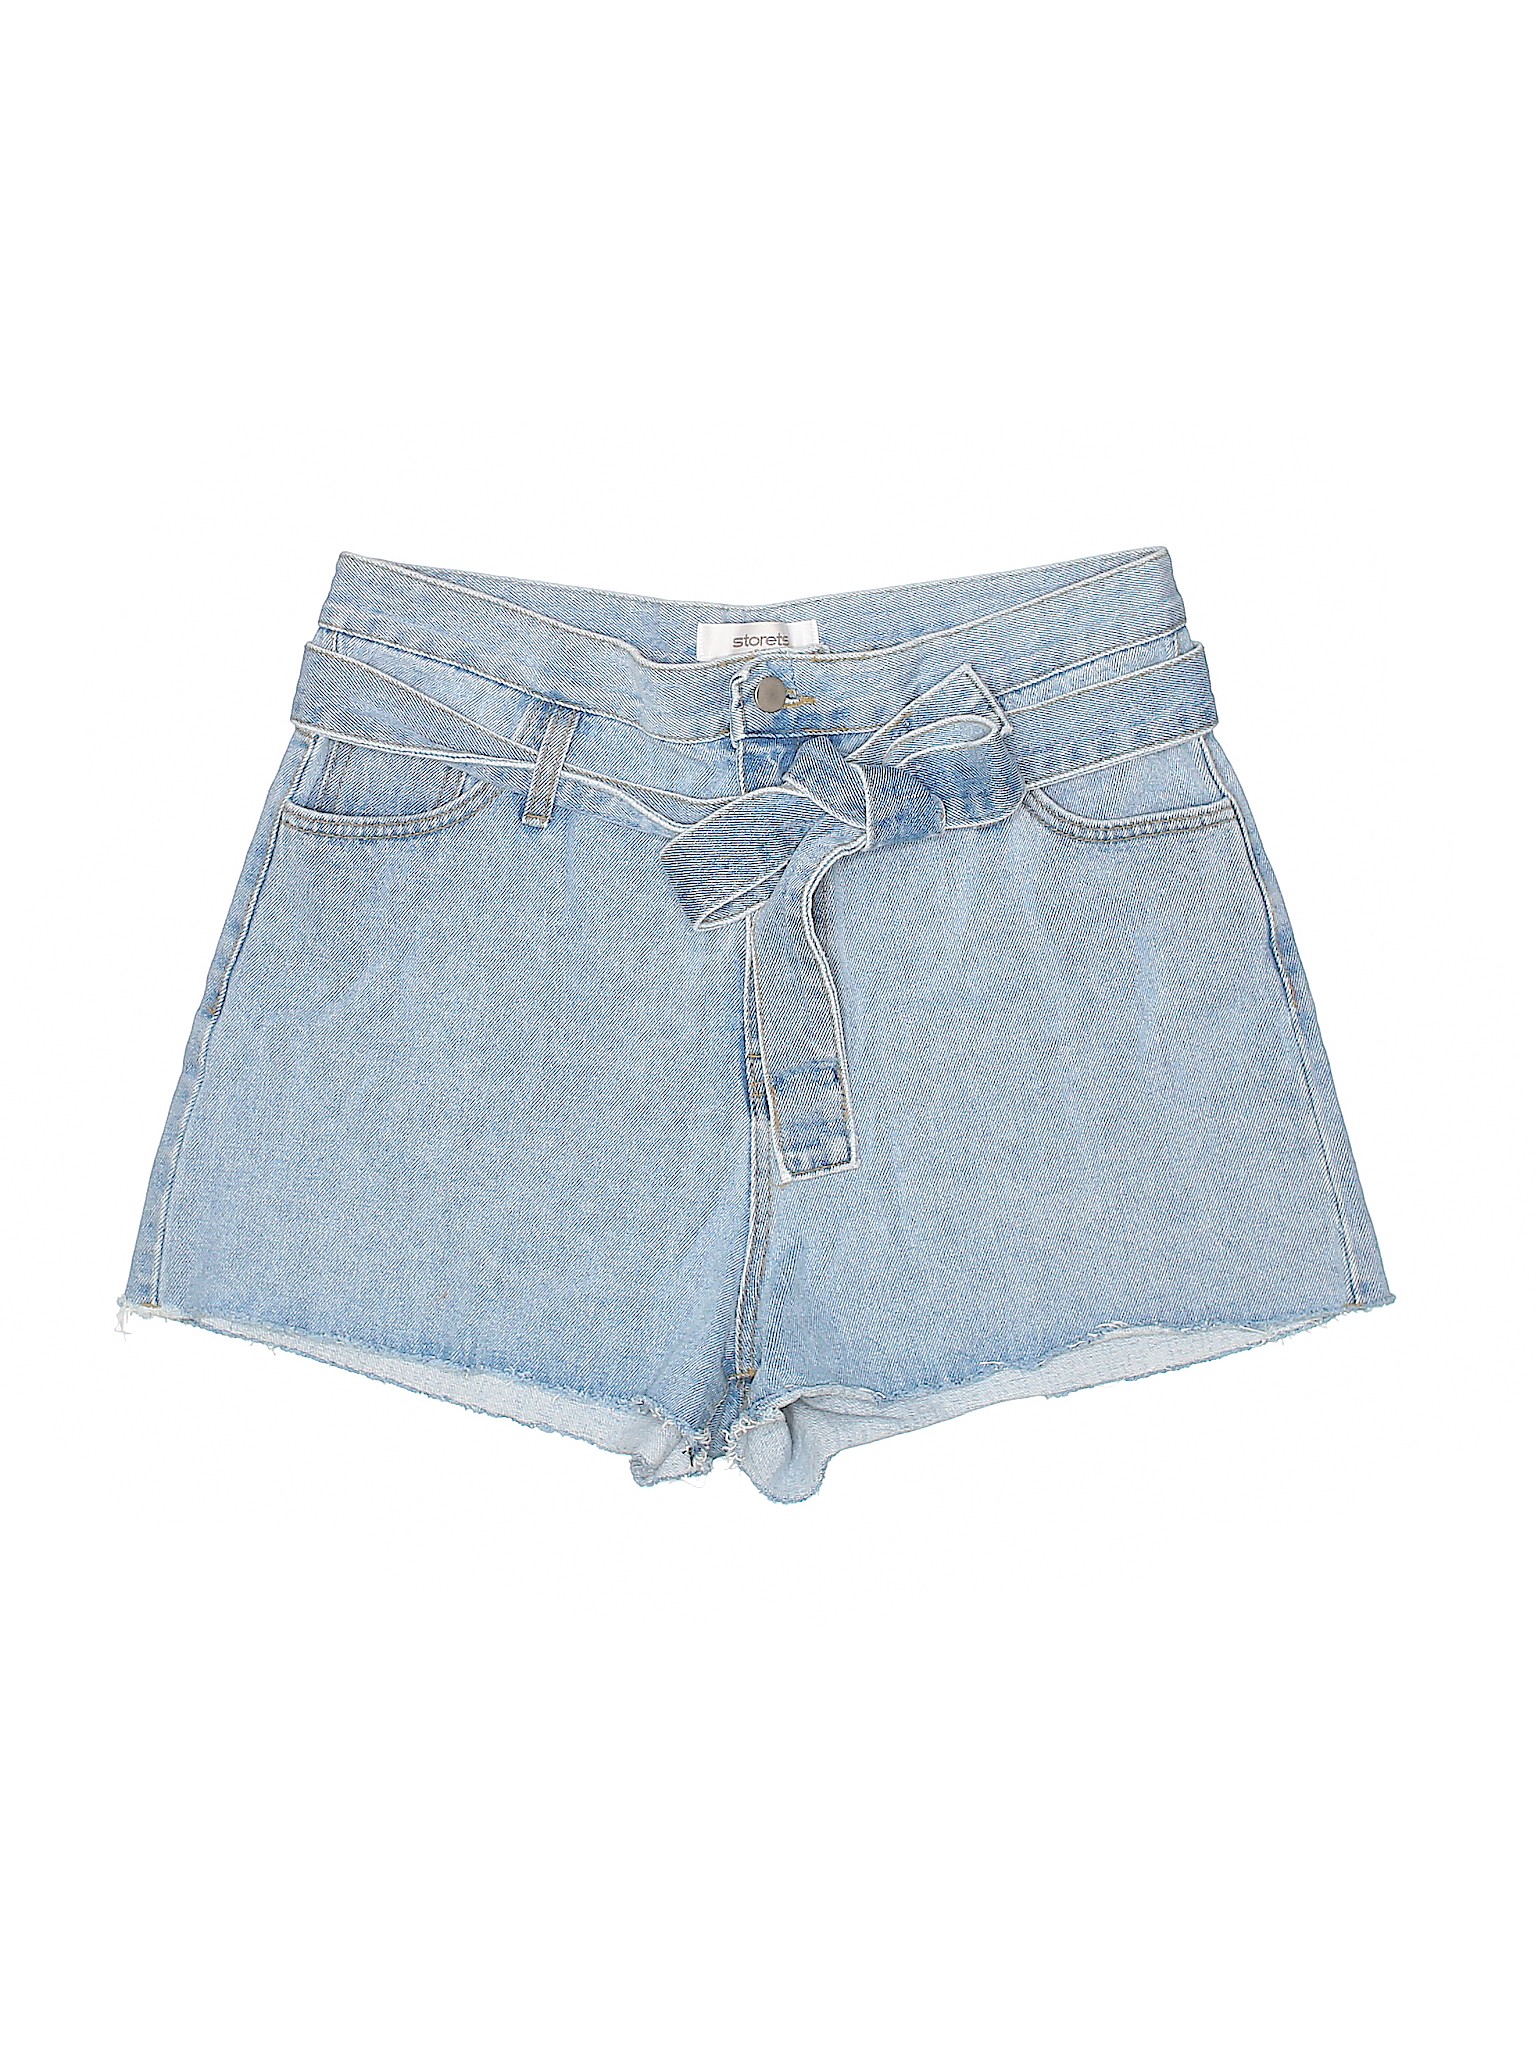 Storets 100% Cotton Solid Blue Denim Shorts Size Sm - Med - 74% off ...